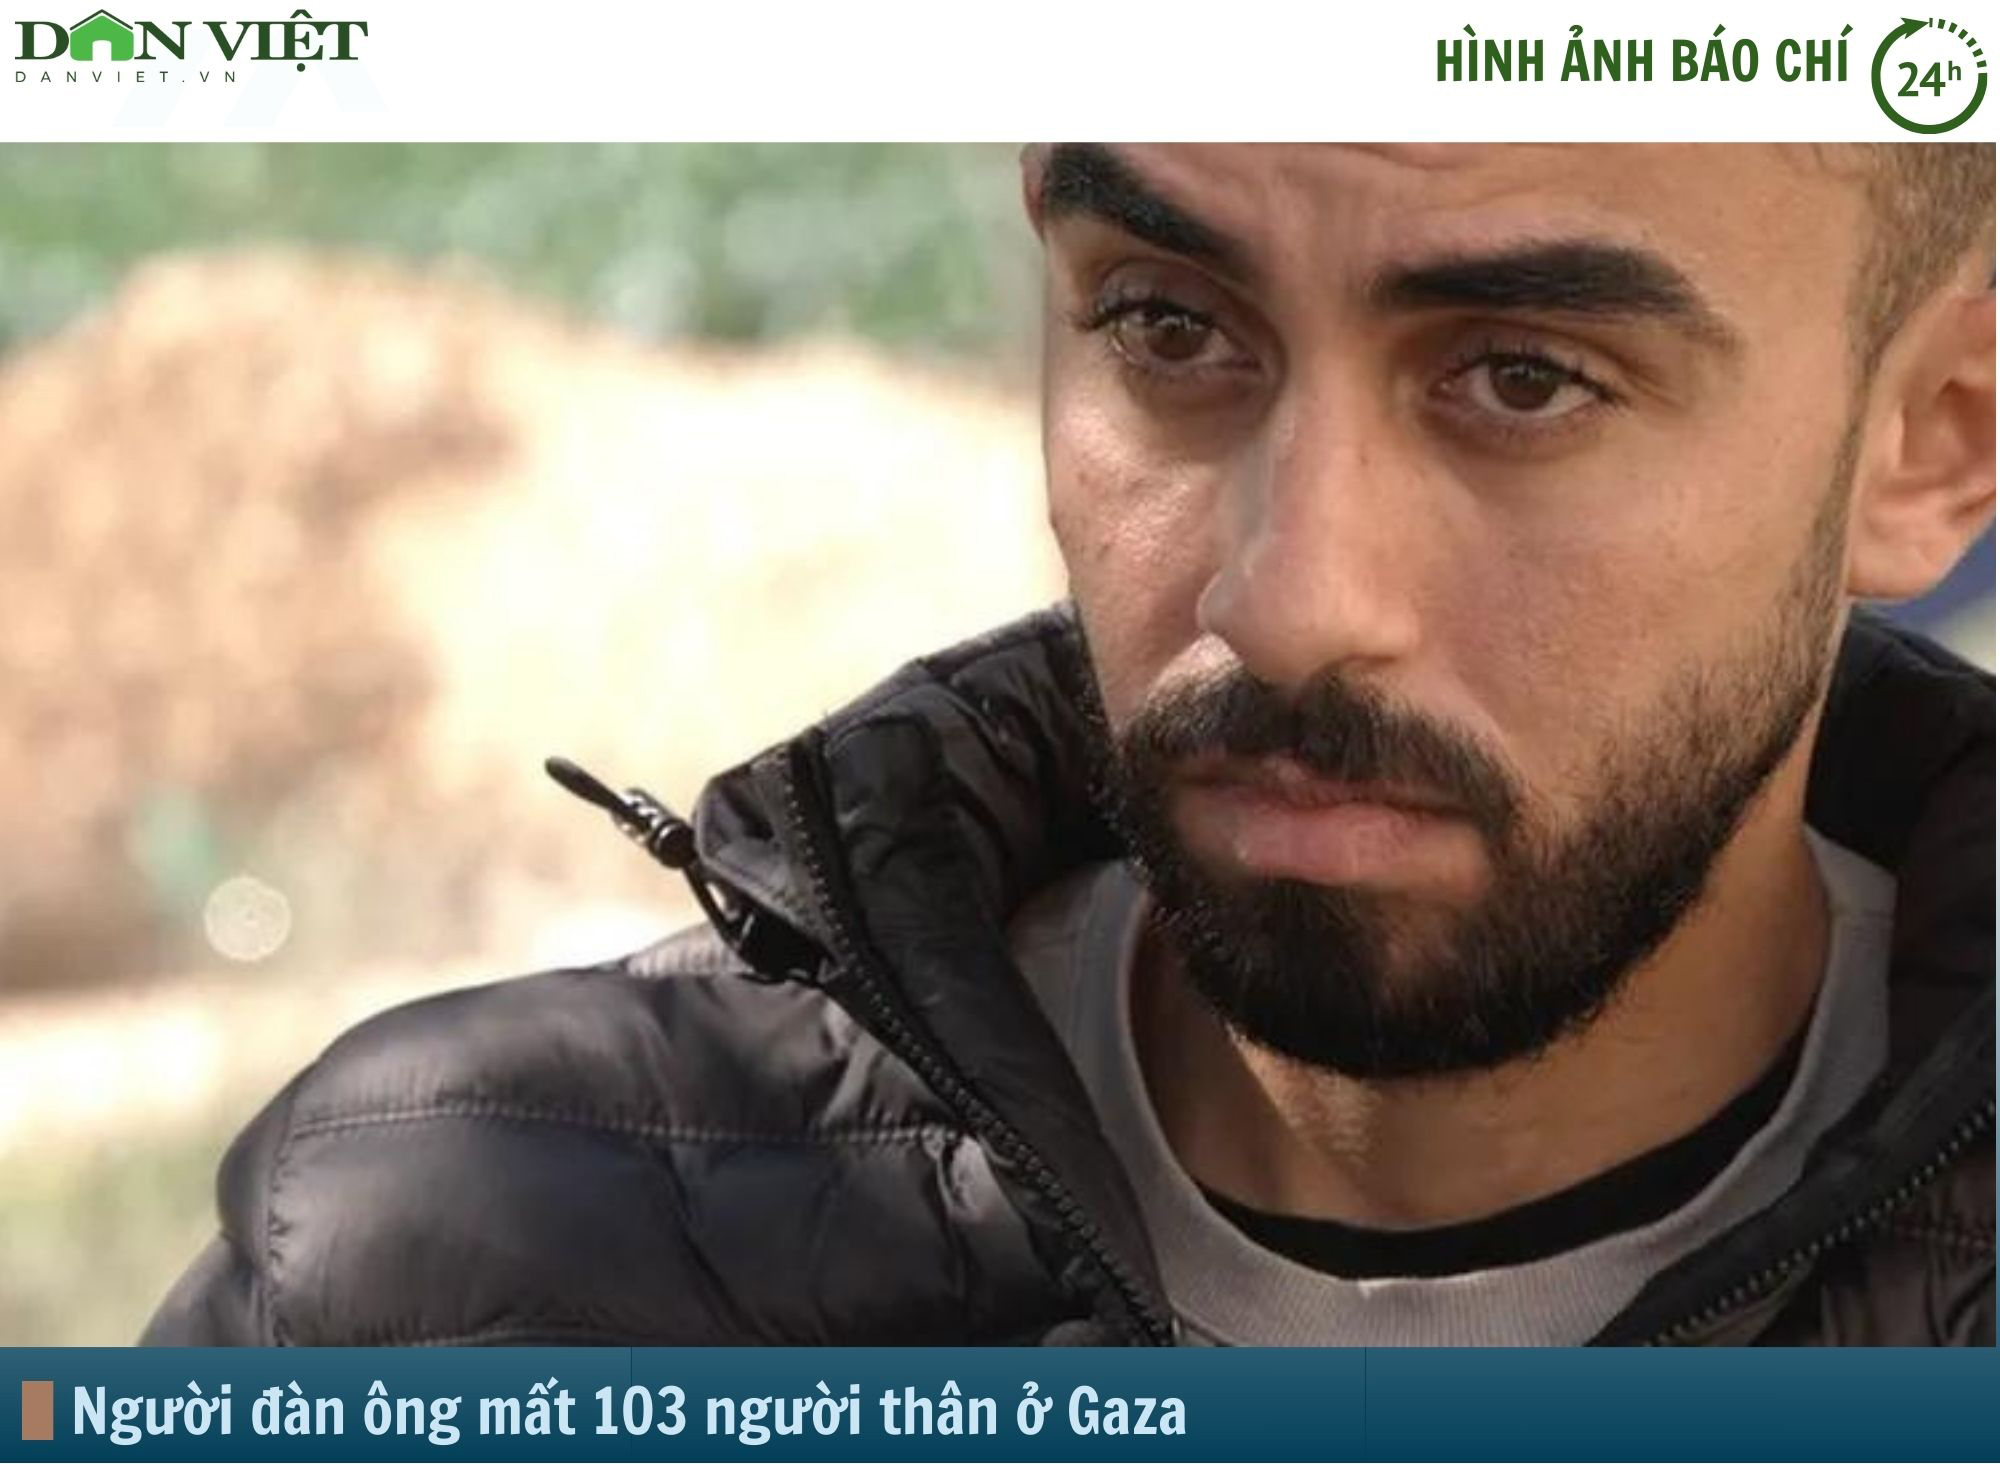 Hình ảnh báo chí 24h: Người đàn ông mất 103 người thân sau vụ không kích của Israel vào Gaza- Ảnh 1.